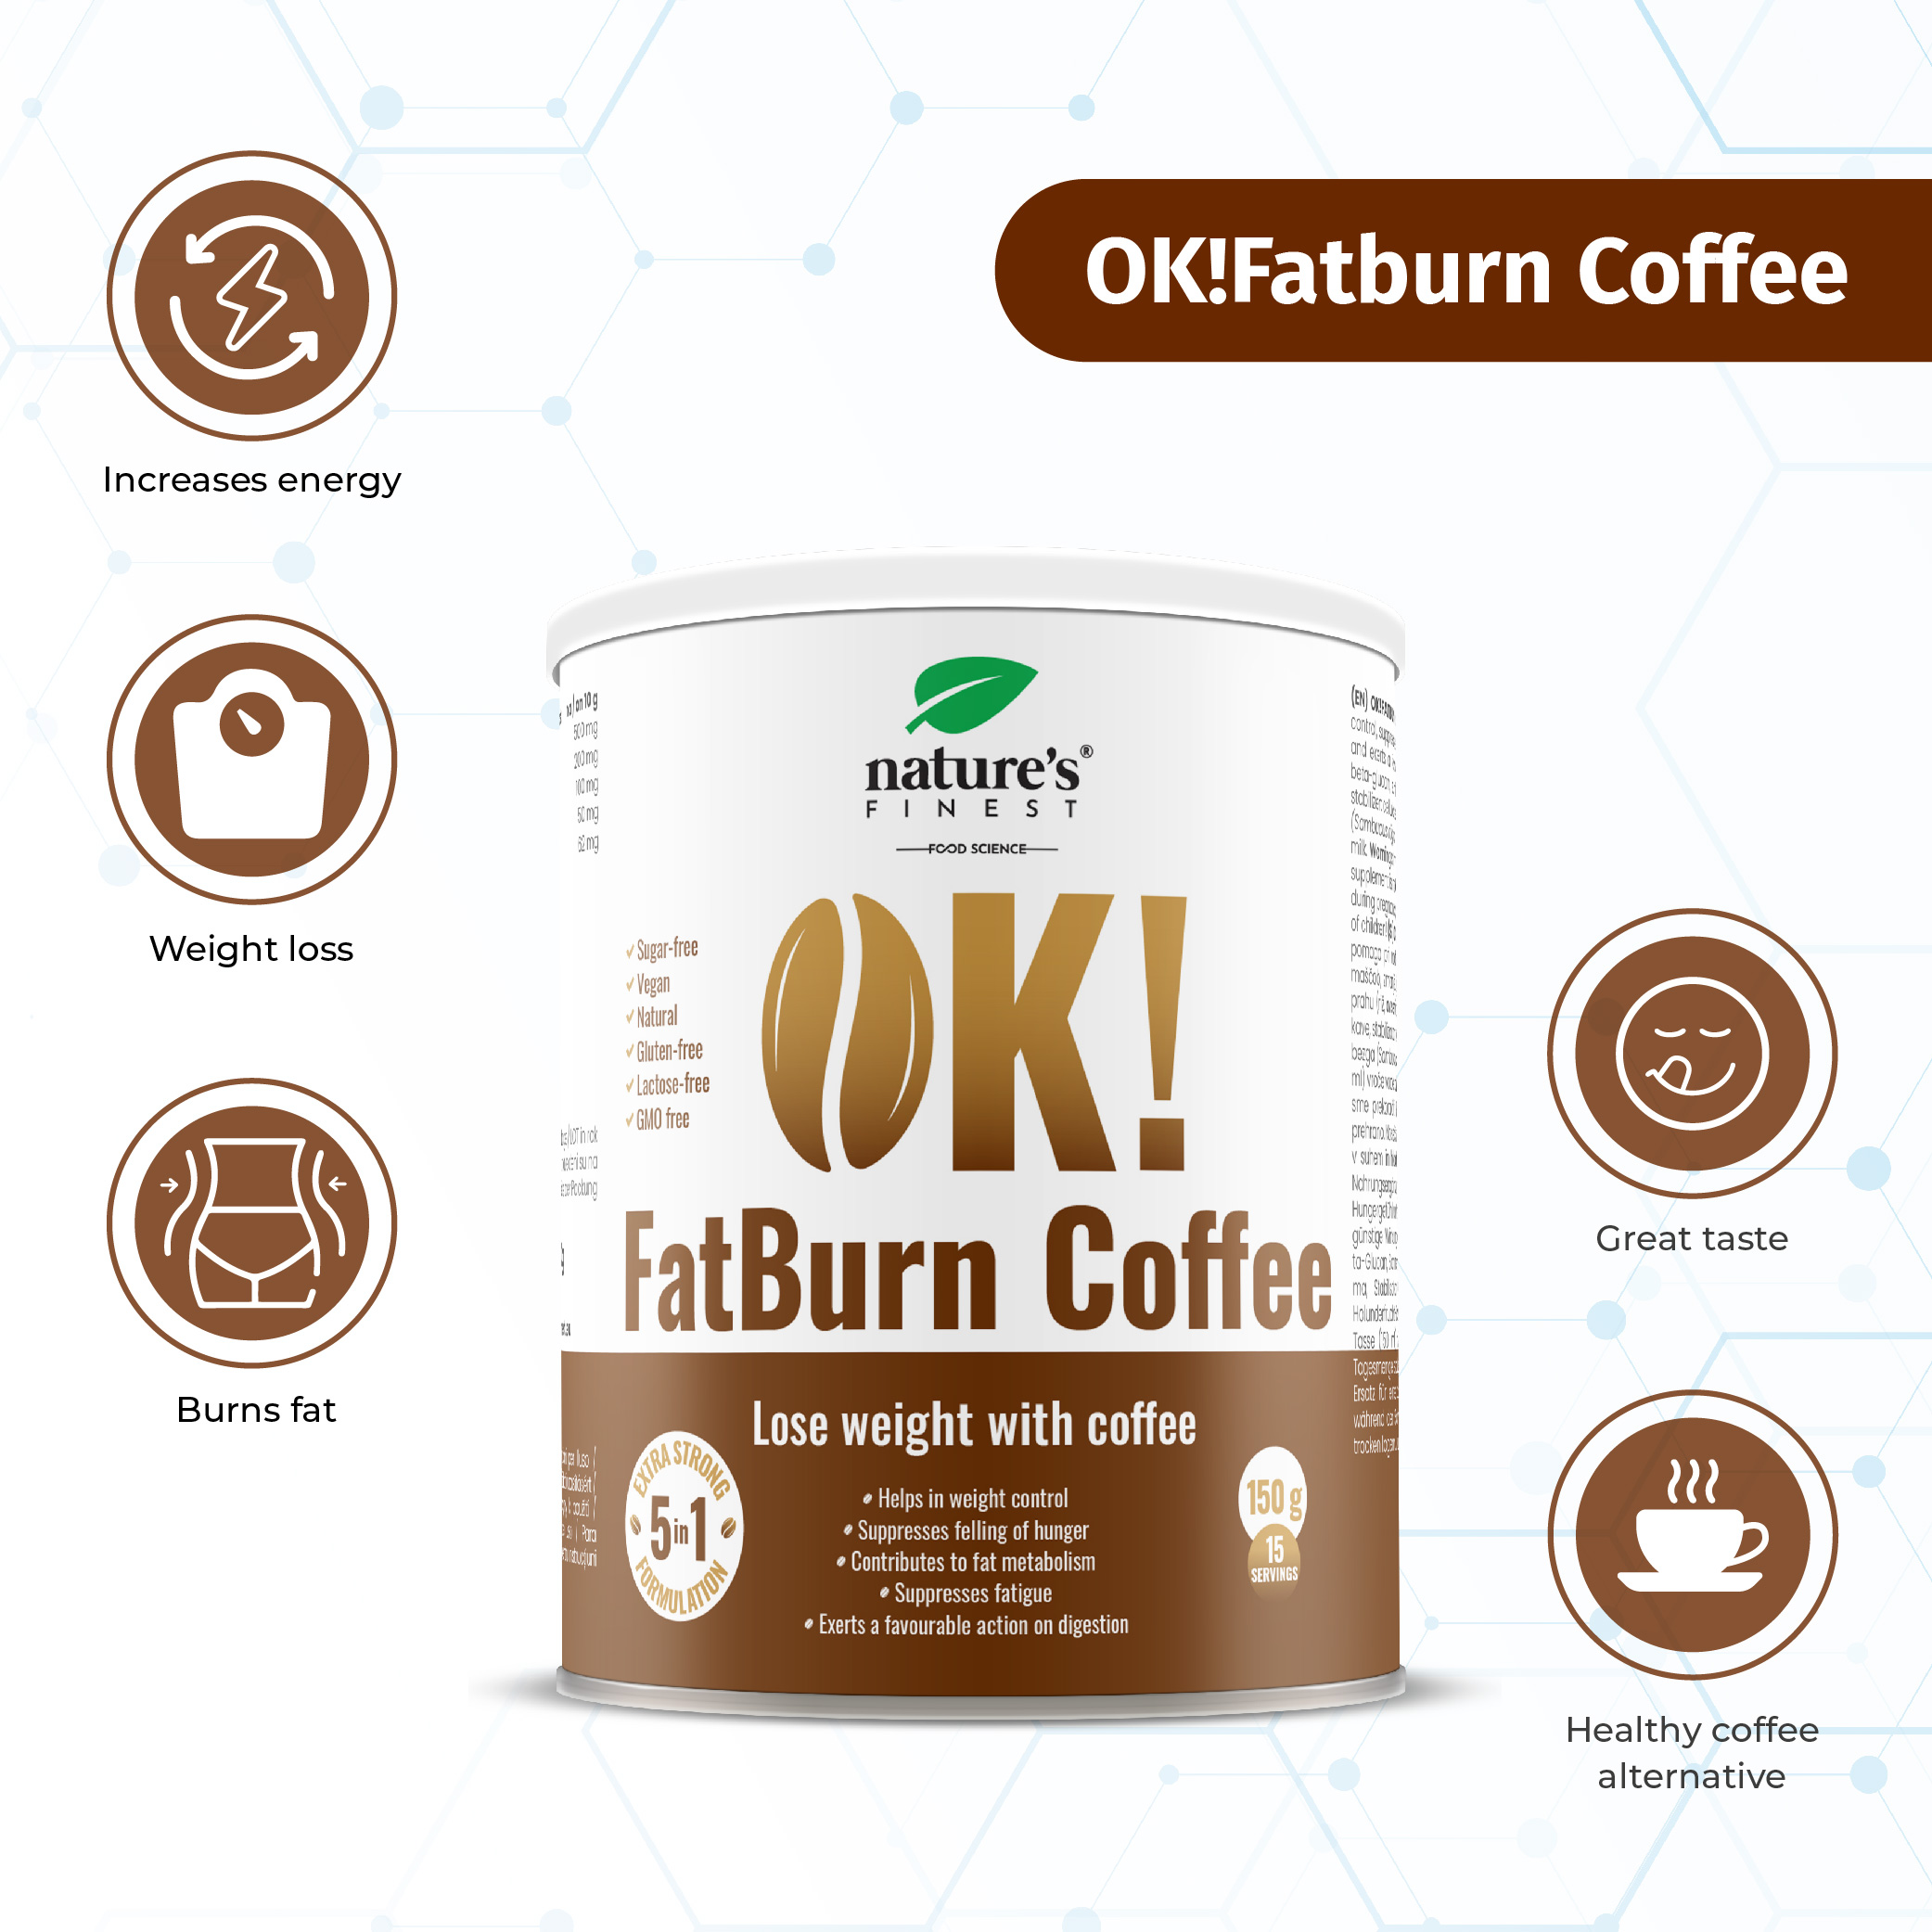 Looduse parim Ok! Fatburn kohvijook rasvapõletuseks ja energia saamiseks | Multum